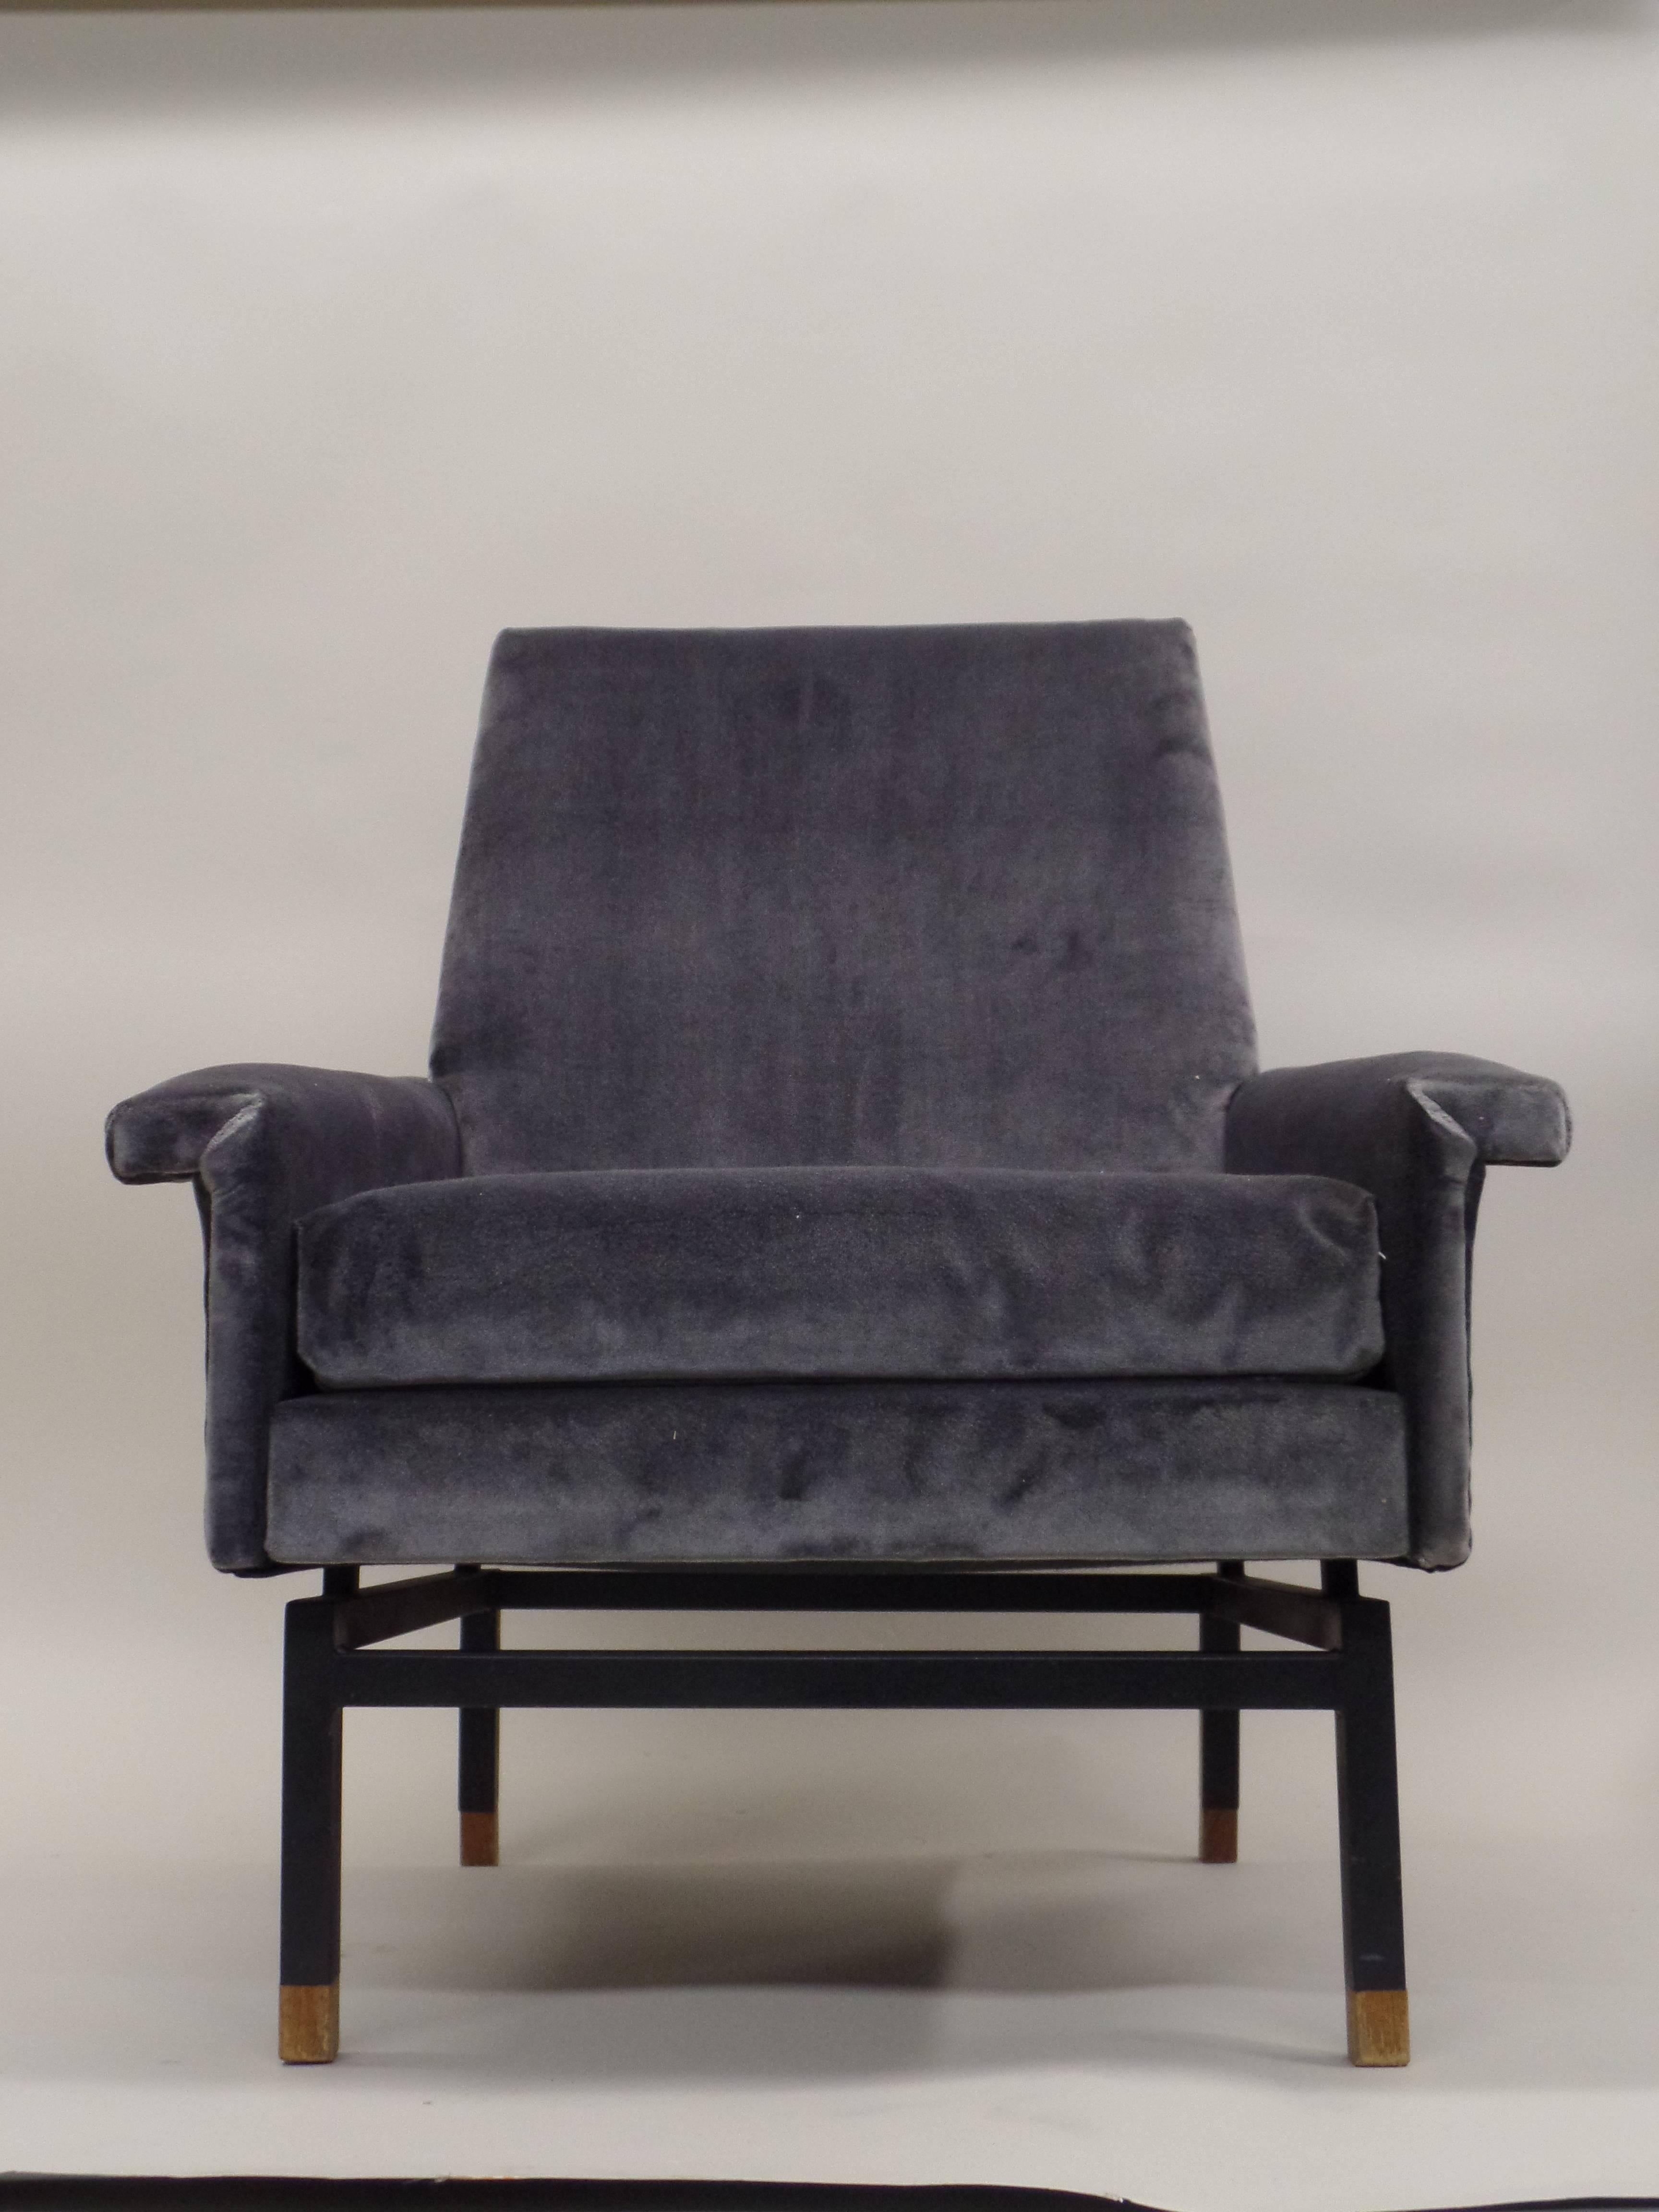 Élégante paire de fauteuils italiens modernes du milieu du siècle attribués à Gianfranco Frattini. Les chaises sont étonnamment surélevées et en porte-à-faux au-dessus d'un cadre en métal émaillé doté de pieds sabres arrière.

 